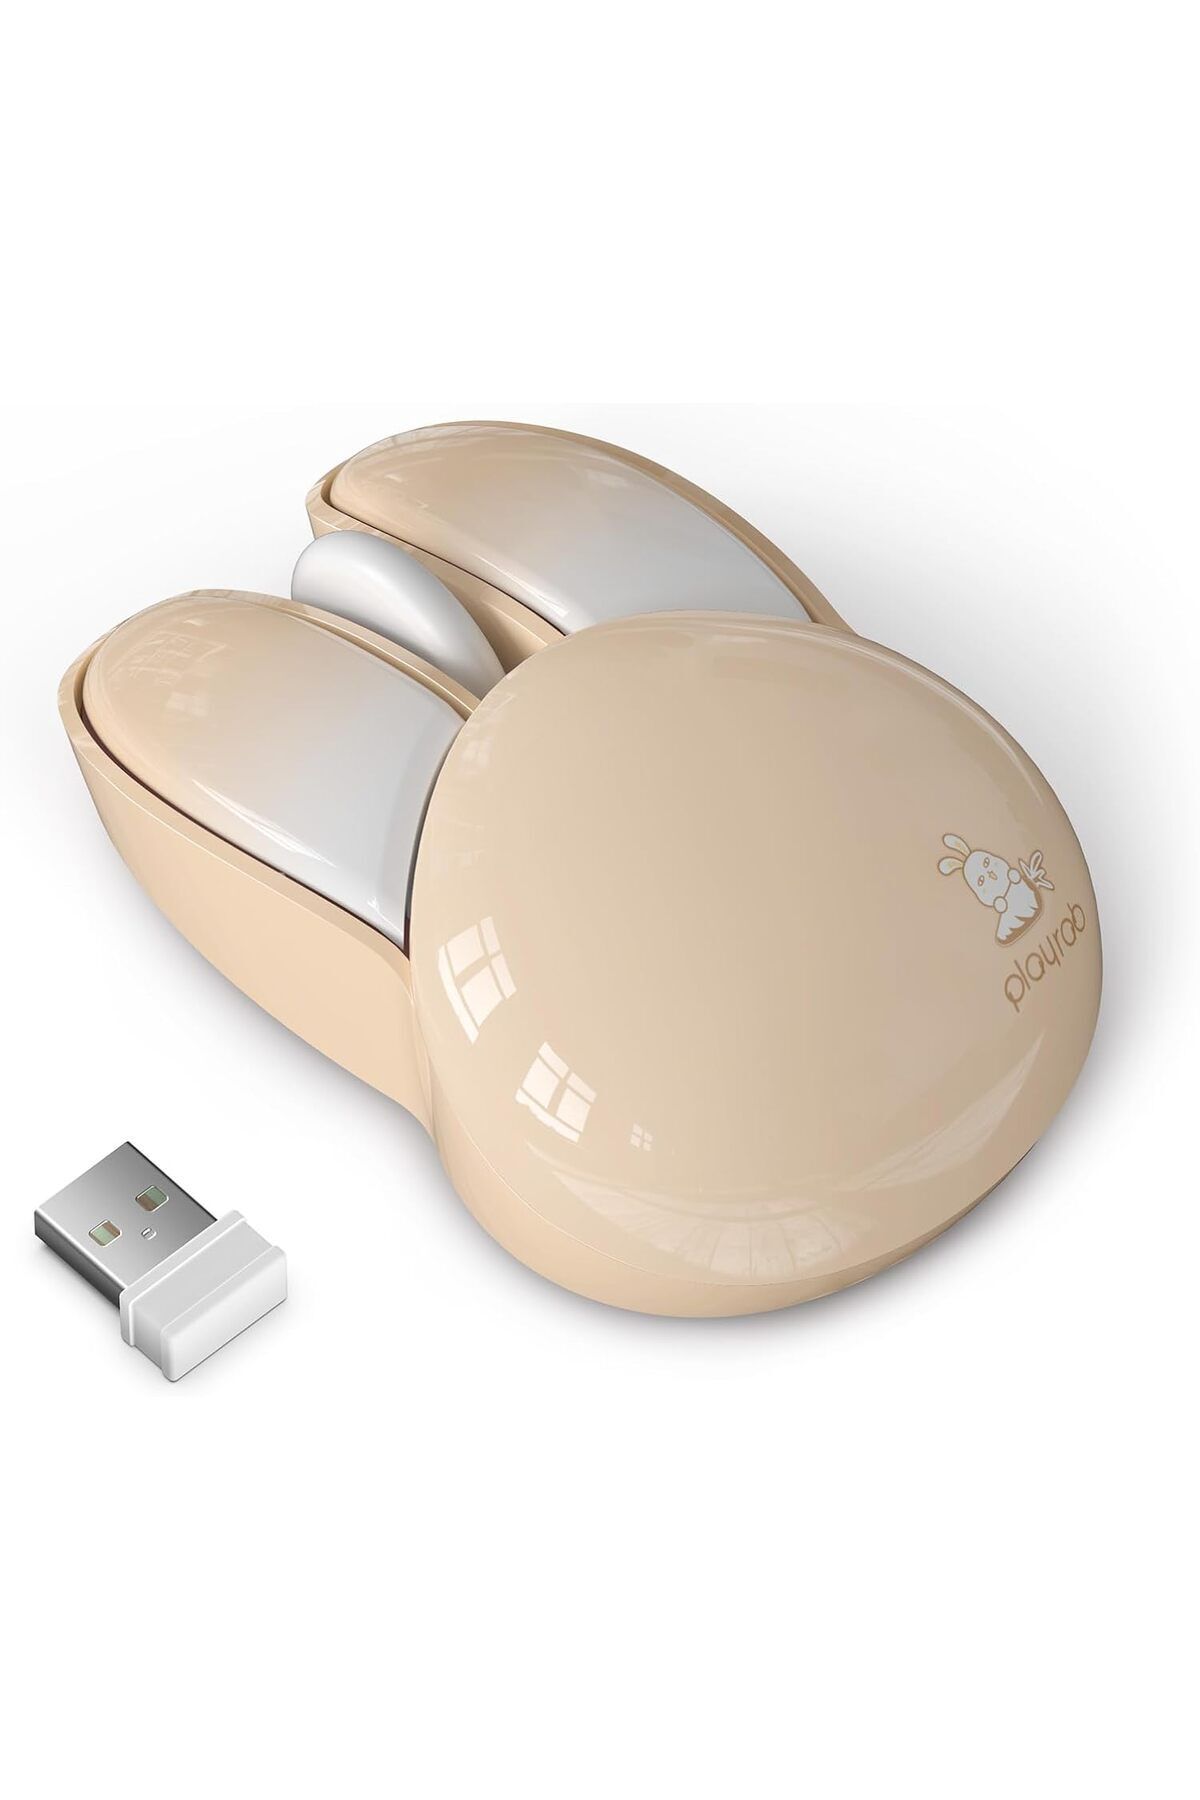 Mofii Wireless Mouse Renkli Tavşan Tasarım Kablosuz Bilgisayar Notebook Mouse 9.2cm x 6cm